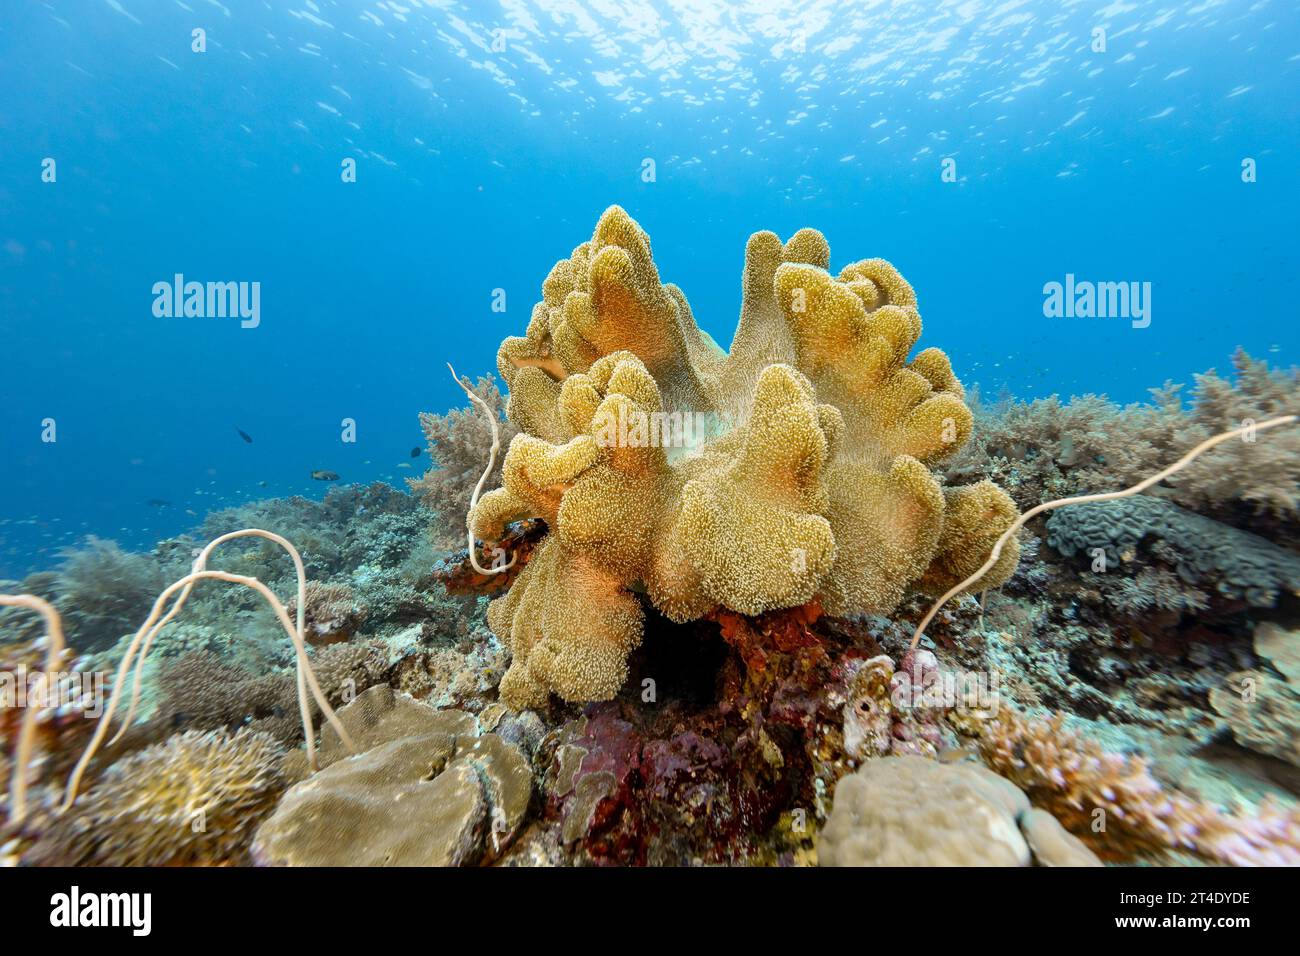 Grand tabouret en cuir corail, Sarcophyton glaucum, affleurement sur récif corallien dans les eaux tropicales bleues Banque D'Images